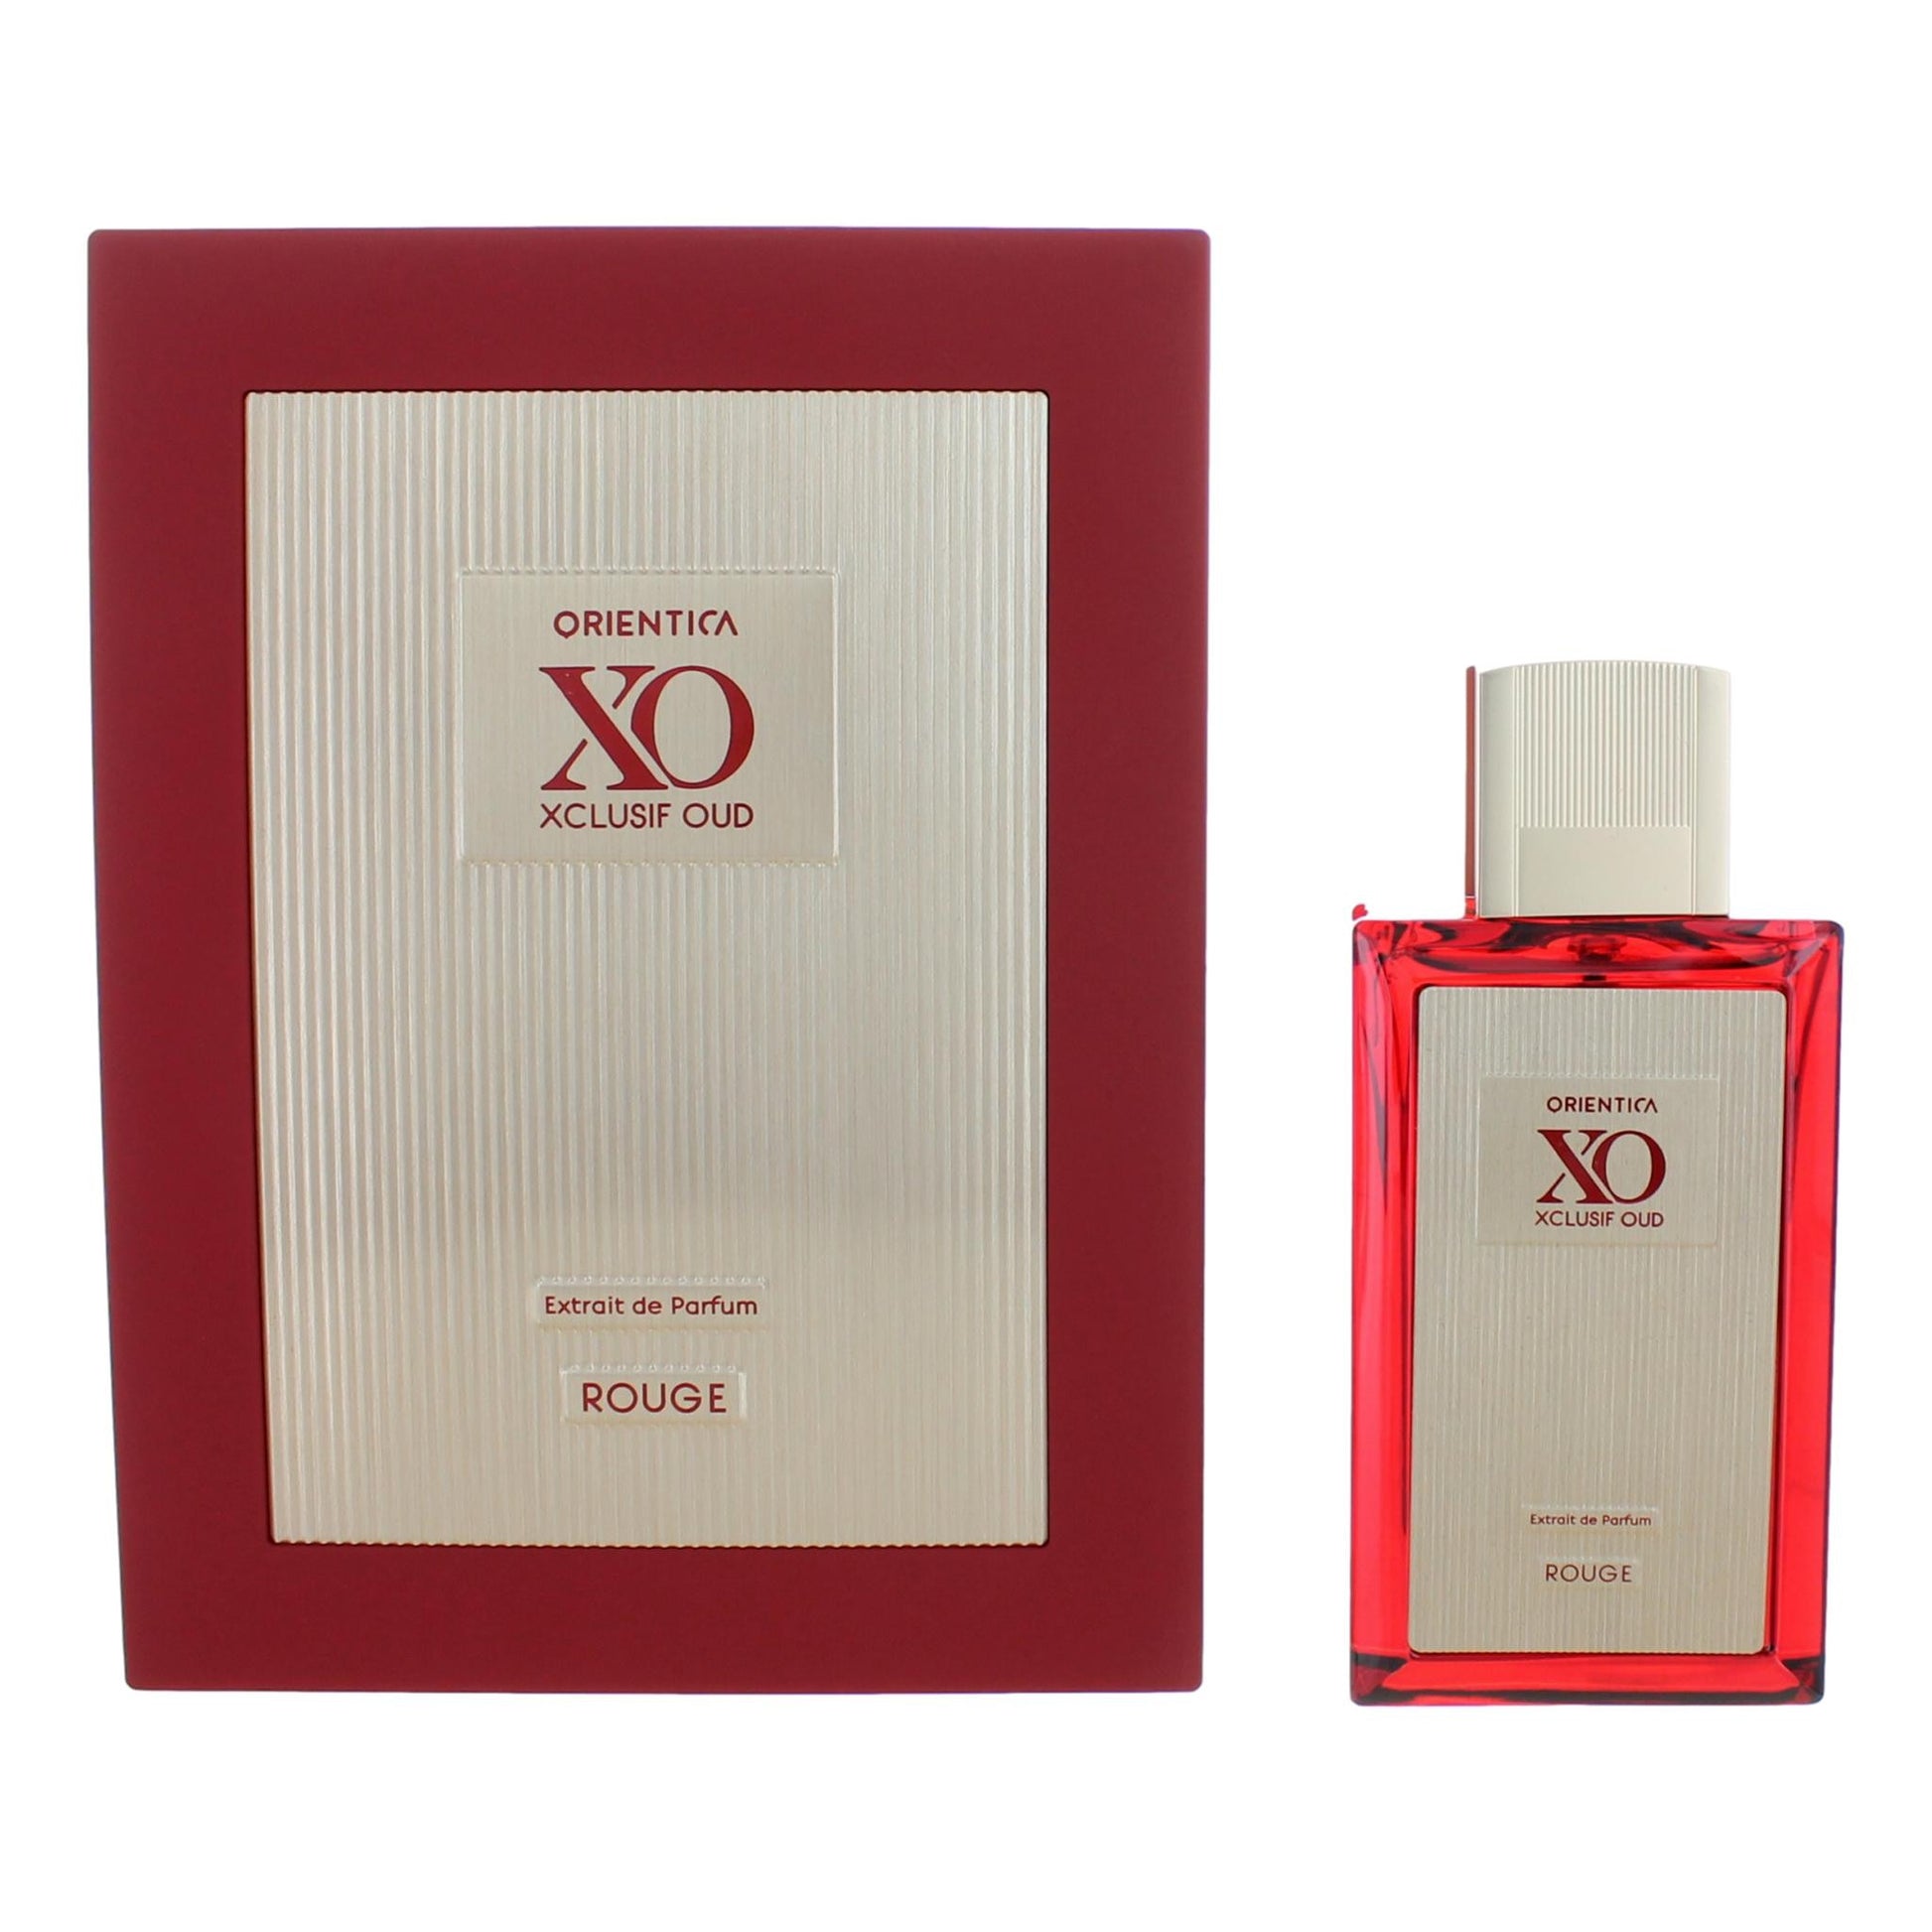 Orientica XO Xclusif Oud Rouge by Orientica, 2oz Extrait De Parfum for Unisex